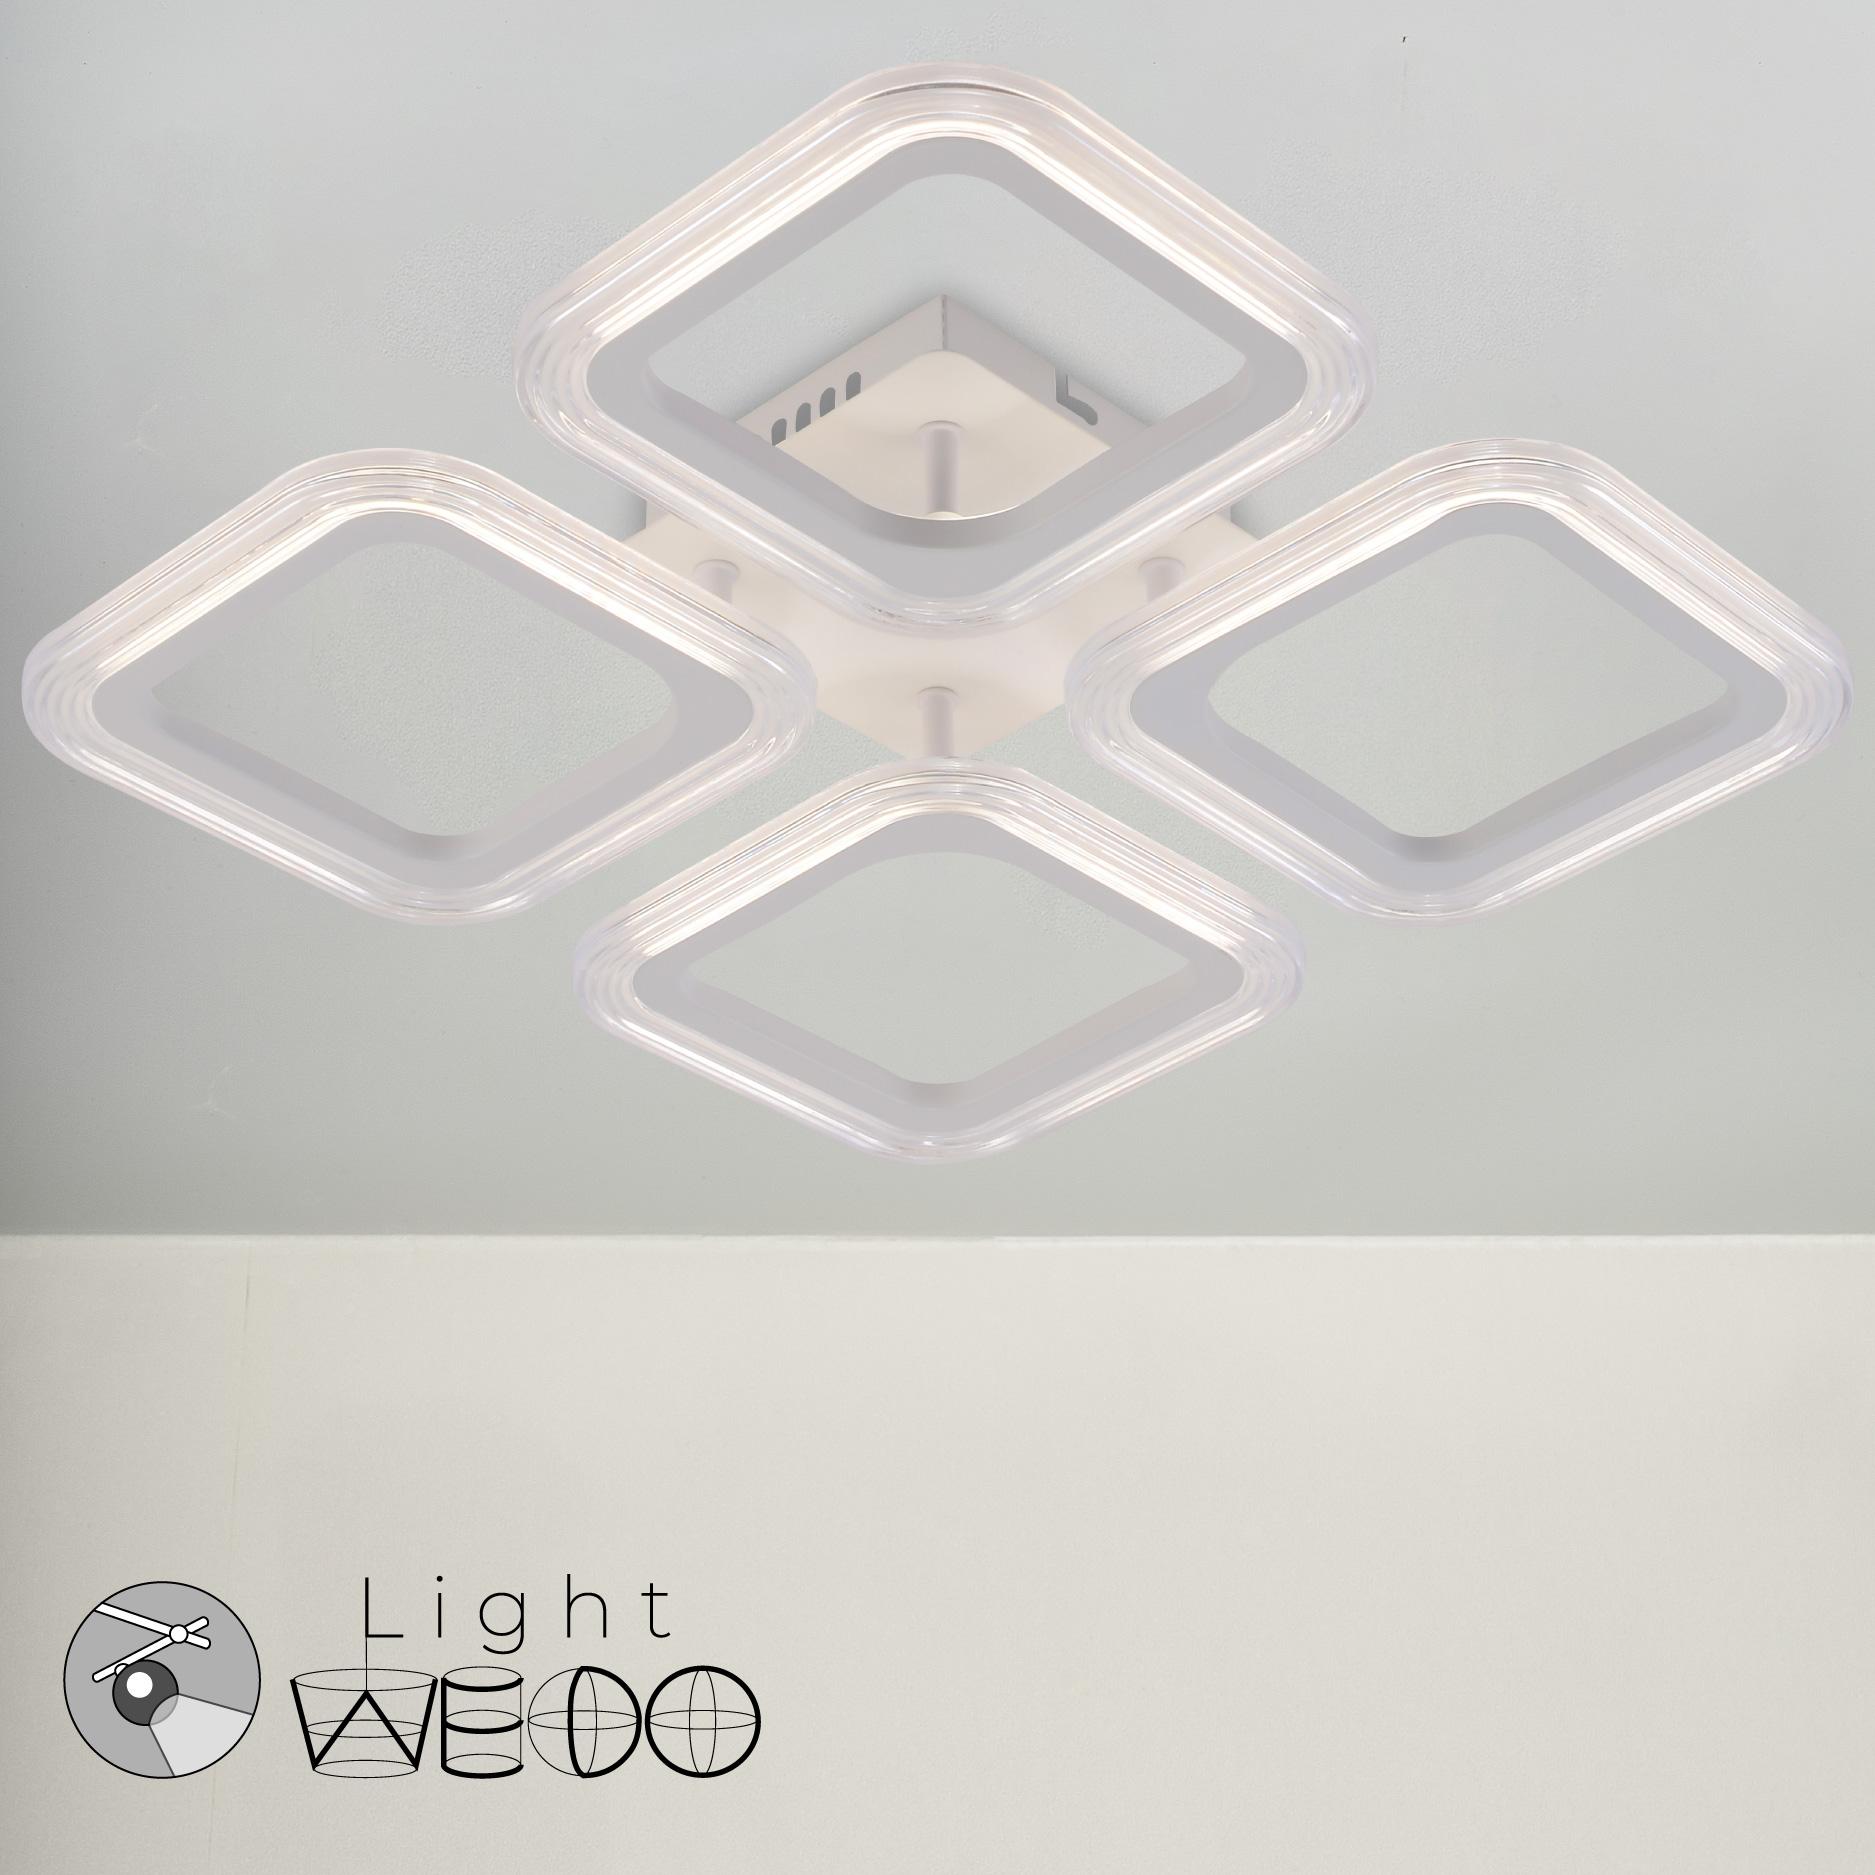 Люстра потолочная WEDO LIGHT 64Вт 12кв м LED 4 режима свечения белый